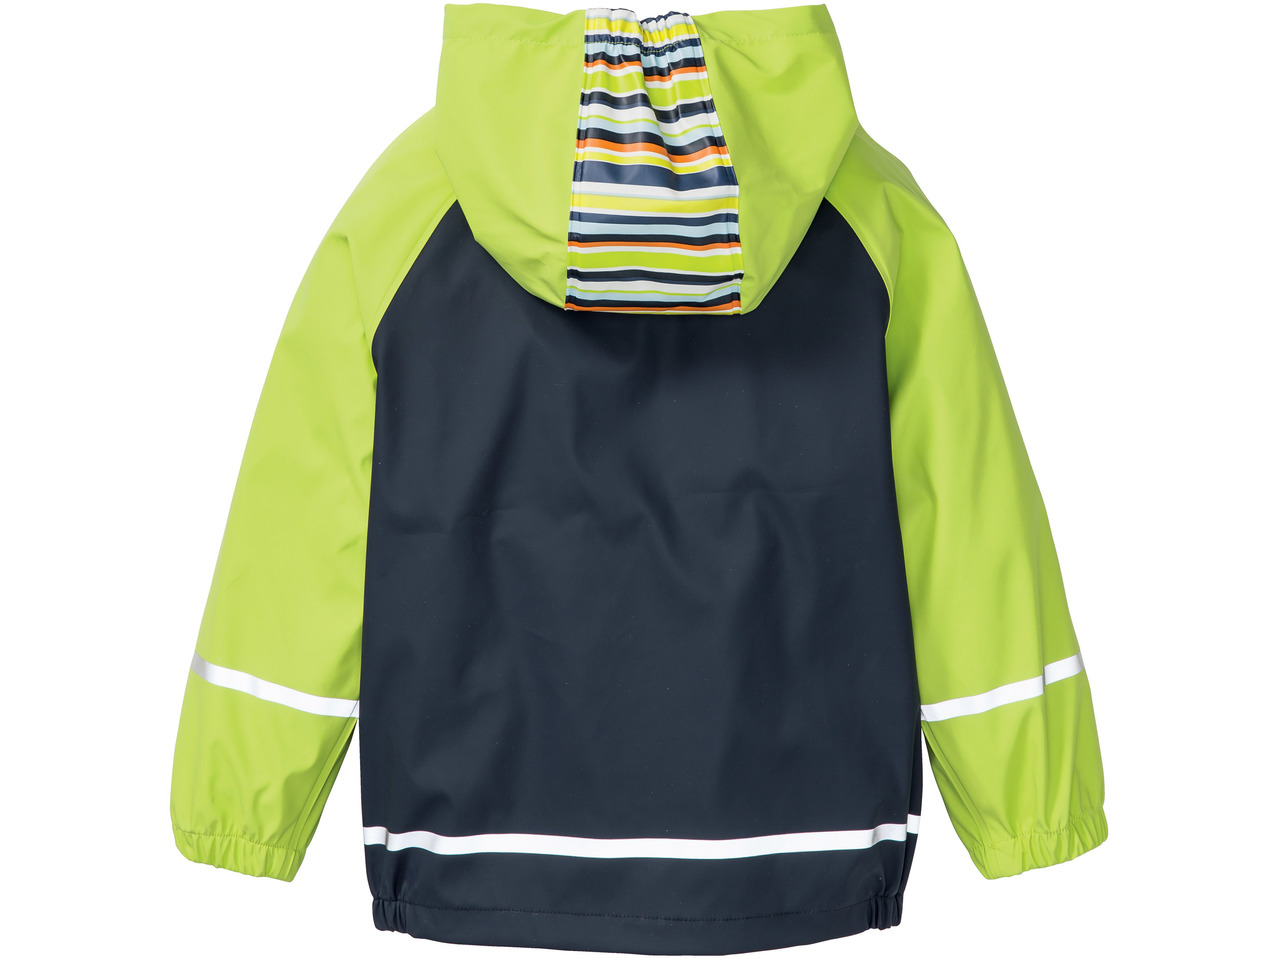 Kids' Waterproof Jacket